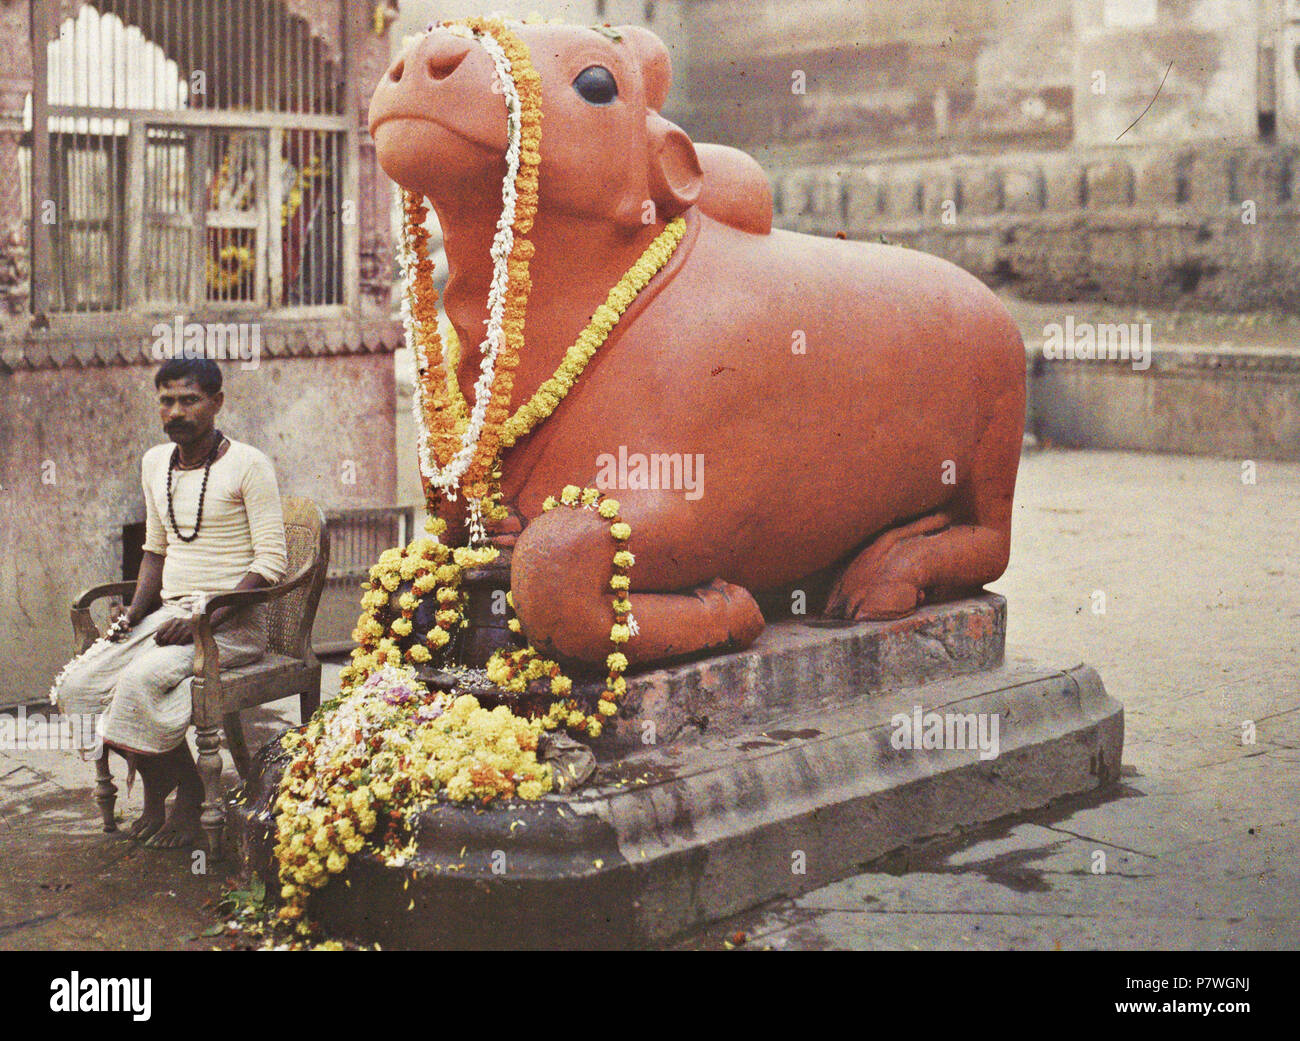 English: Statue of the bull Nandi. Benares (Varanasi). Autochrome from Albert Kahn's Archives de la planète. Français : Statue du taureau Nandi, monture de Shiva. Bénarès (Varanasi). Autochrome. Archives de la planète, inv. A 4 432 S. [1]. 29 January 1914 203 Indien, Varanasi Benares, Statue des Heiligen Stiers Stock Photo